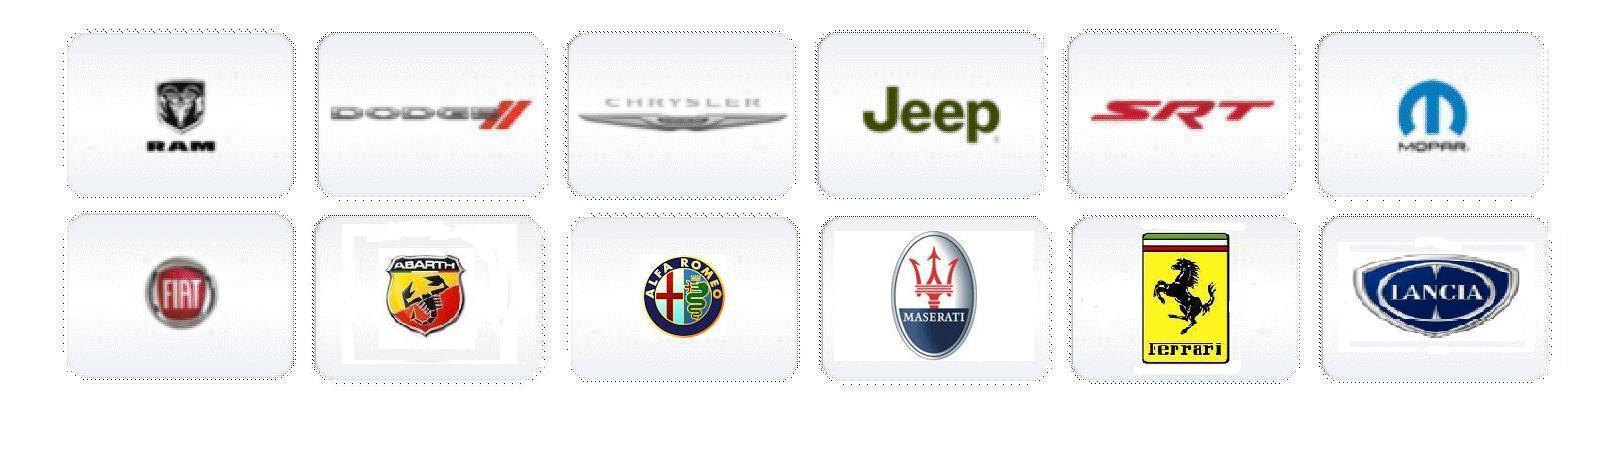 Chrysler brands